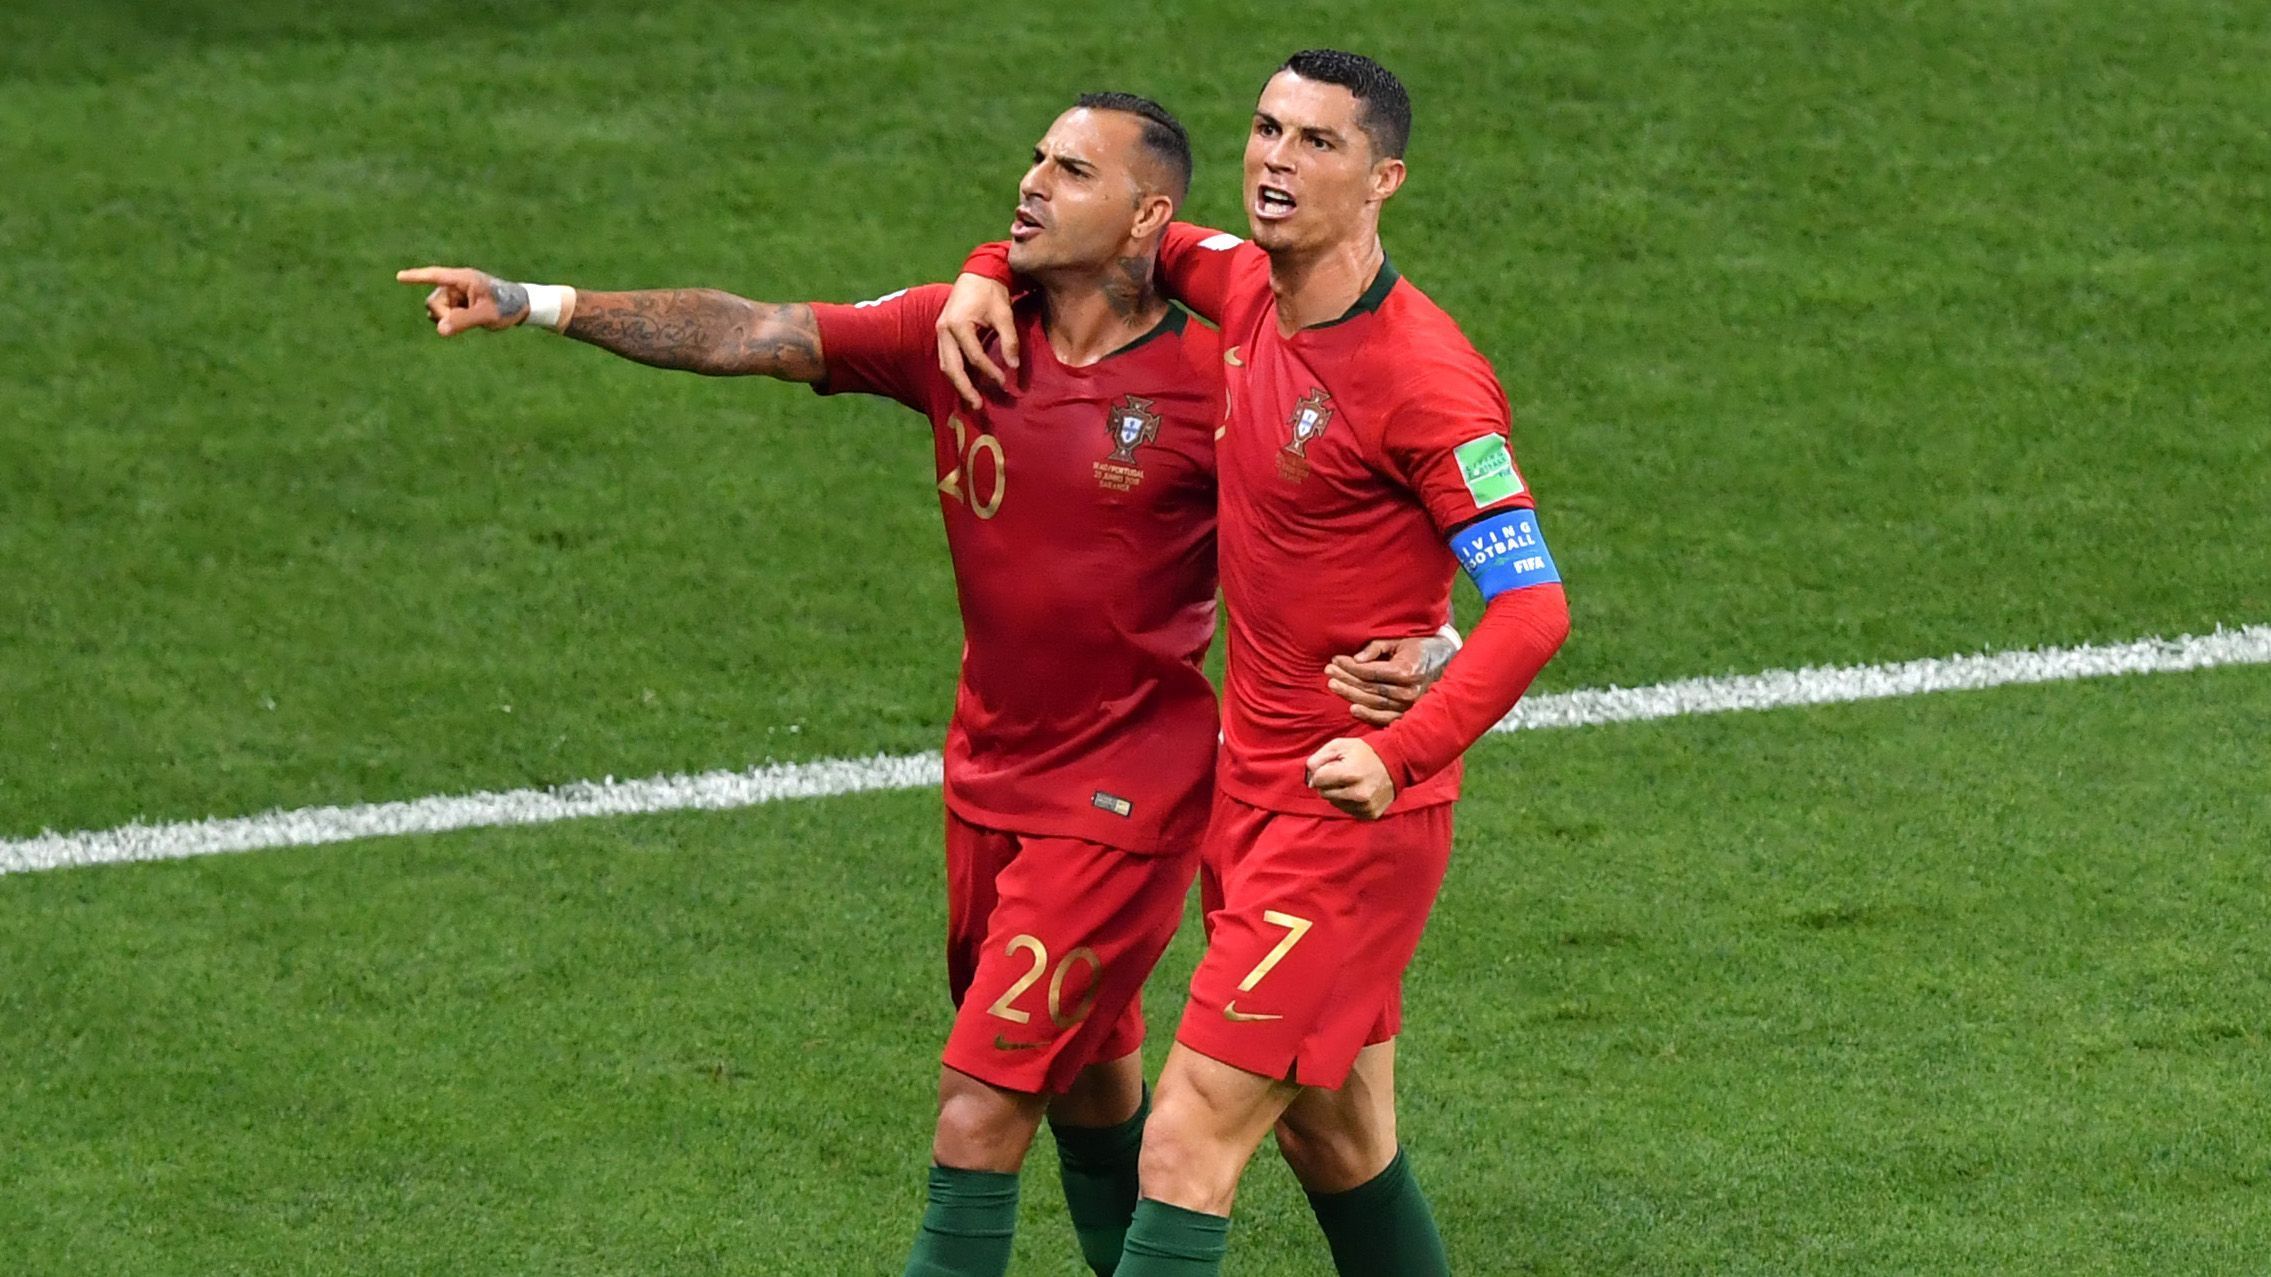 
                <strong>2. Gruppe B: Portugal</strong><br>
                Bei Portugal ist das große Zittern angesagt! Nach dem Führungstreffer von Quaresma wähnt sich der Europameister wohl schon auf der Siegerstraße, vor allem als Ronaldo am Elfmeterpunkt steht. Doch CR7 verschießt den Strafstoß, der Iran gleicht seinerseits per Elfmeter aus und hat in der Nachspielzeit die große Chance zur Führung - es wäre der erste Platz für die Asiaten und das Aus für Portugal gewesen! So aber sichern sich Ronaldo und Co. so eben noch Platz zwei und das Achtelfinale gegen Uruguay.
              